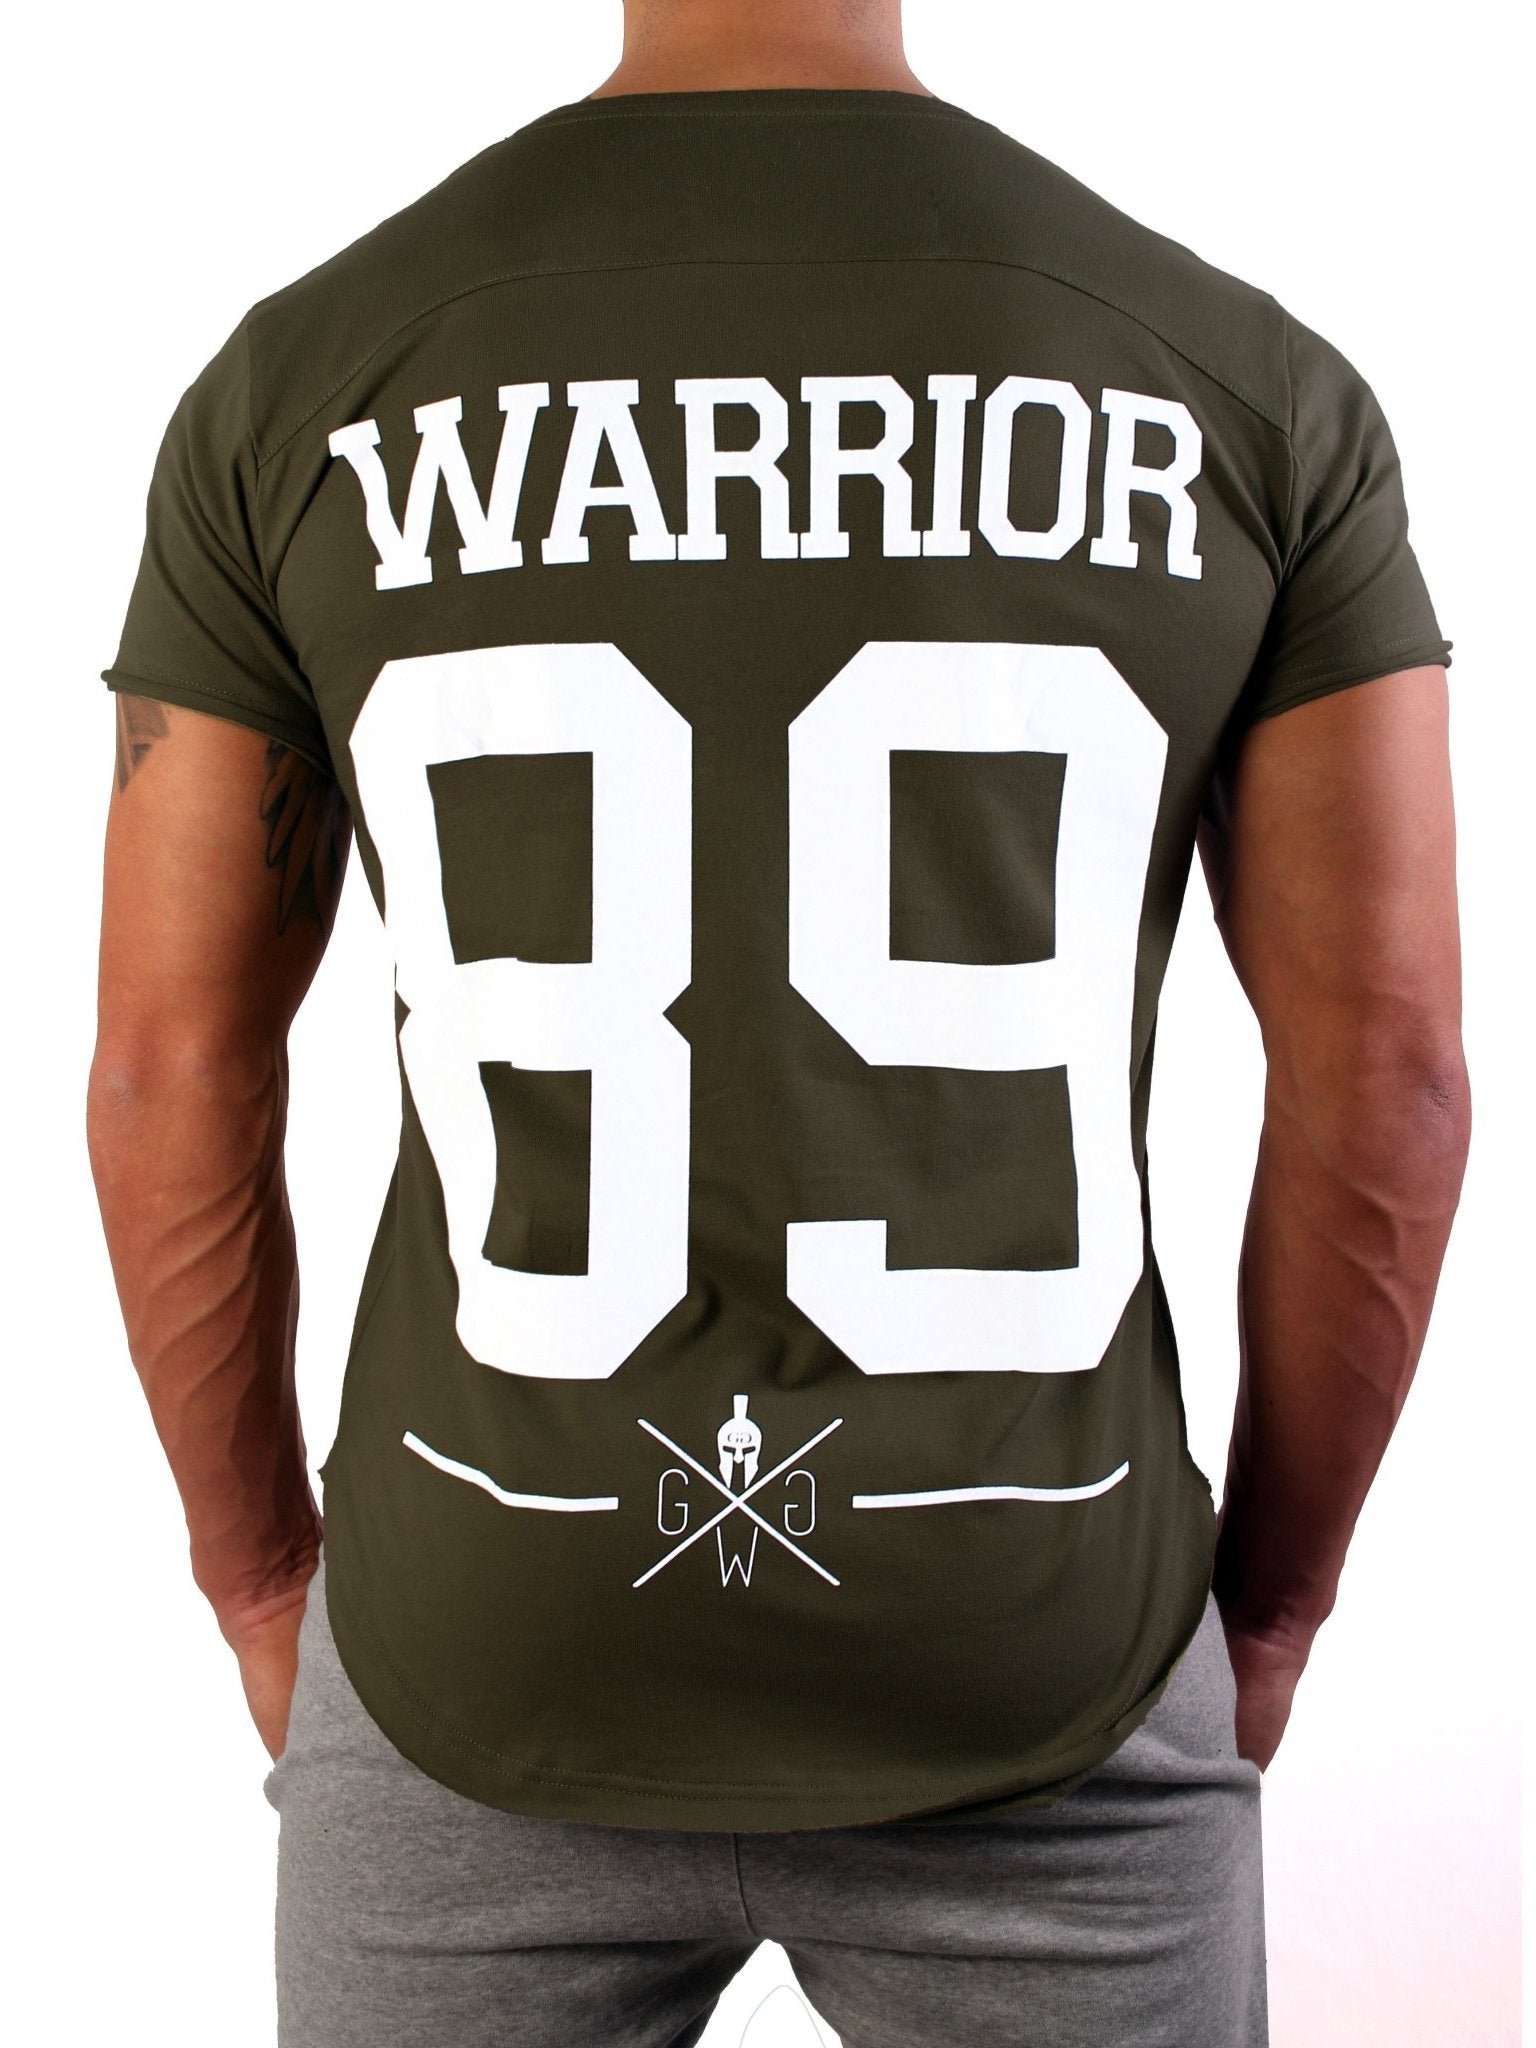 Olivgrünes Warrior T-Shirt von Gym Generation mit auffälligem "Warrior 89" Print in strahlendem Weiß.